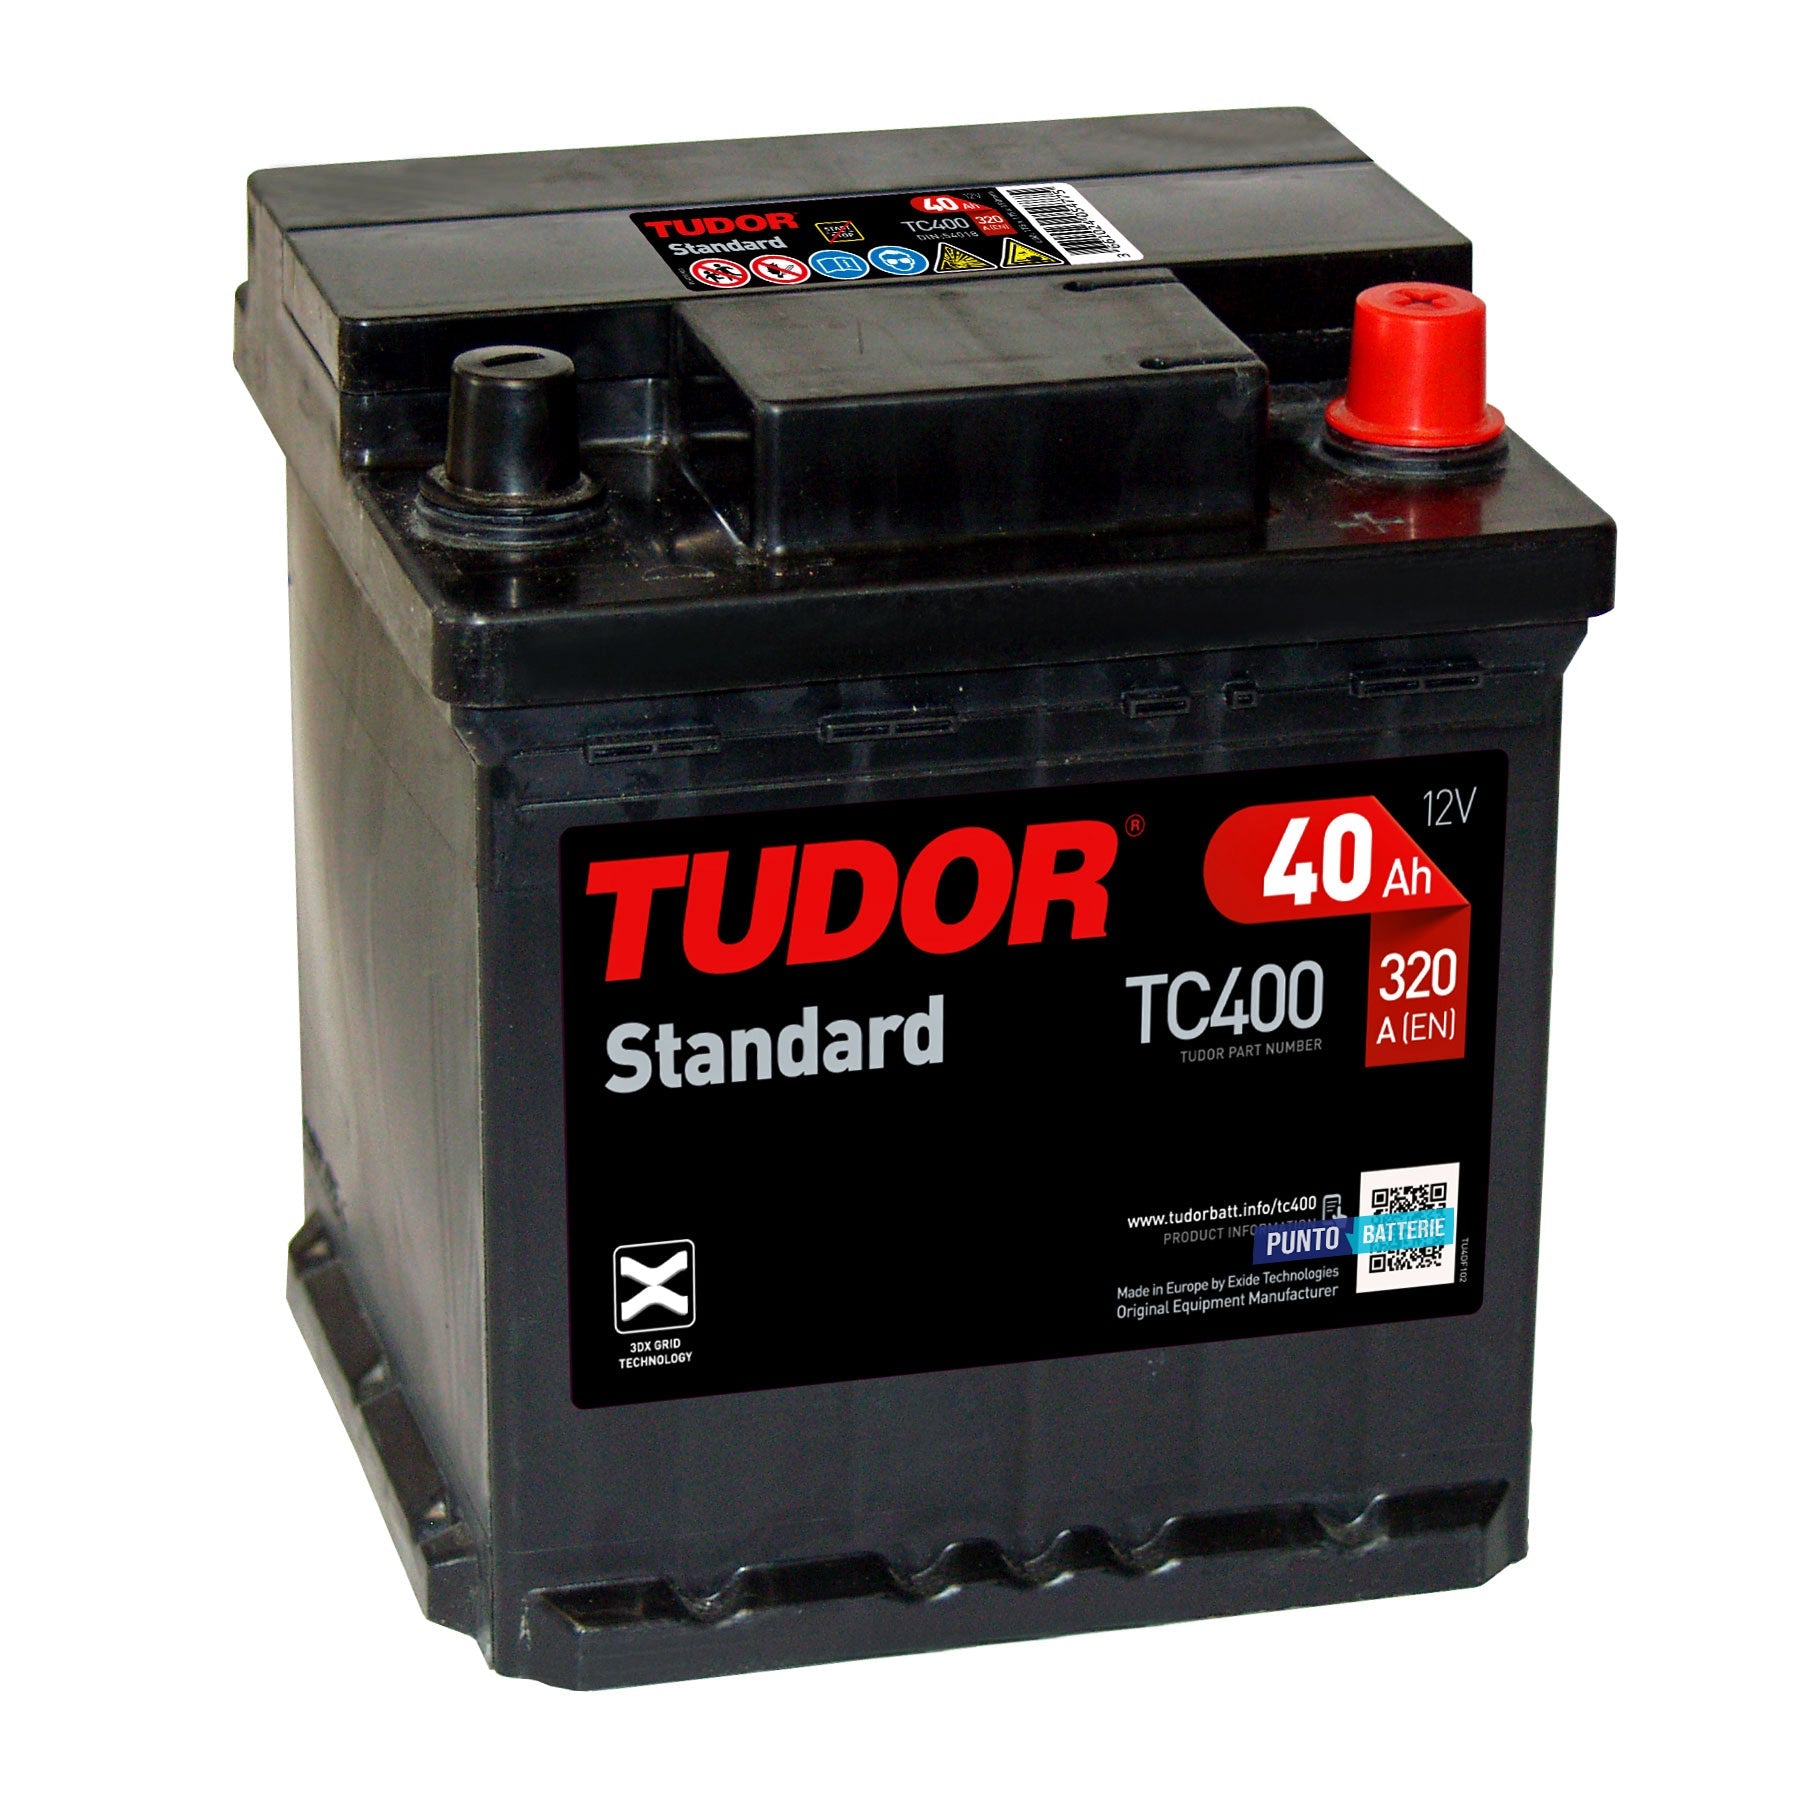 Batteria originale Tudor Standard TC400, dimensioni 175 x 175 x 190, polo positivo a destra, 12 volt, 40 amperora, 320 ampere. Batteria per auto e veicoli leggeri.